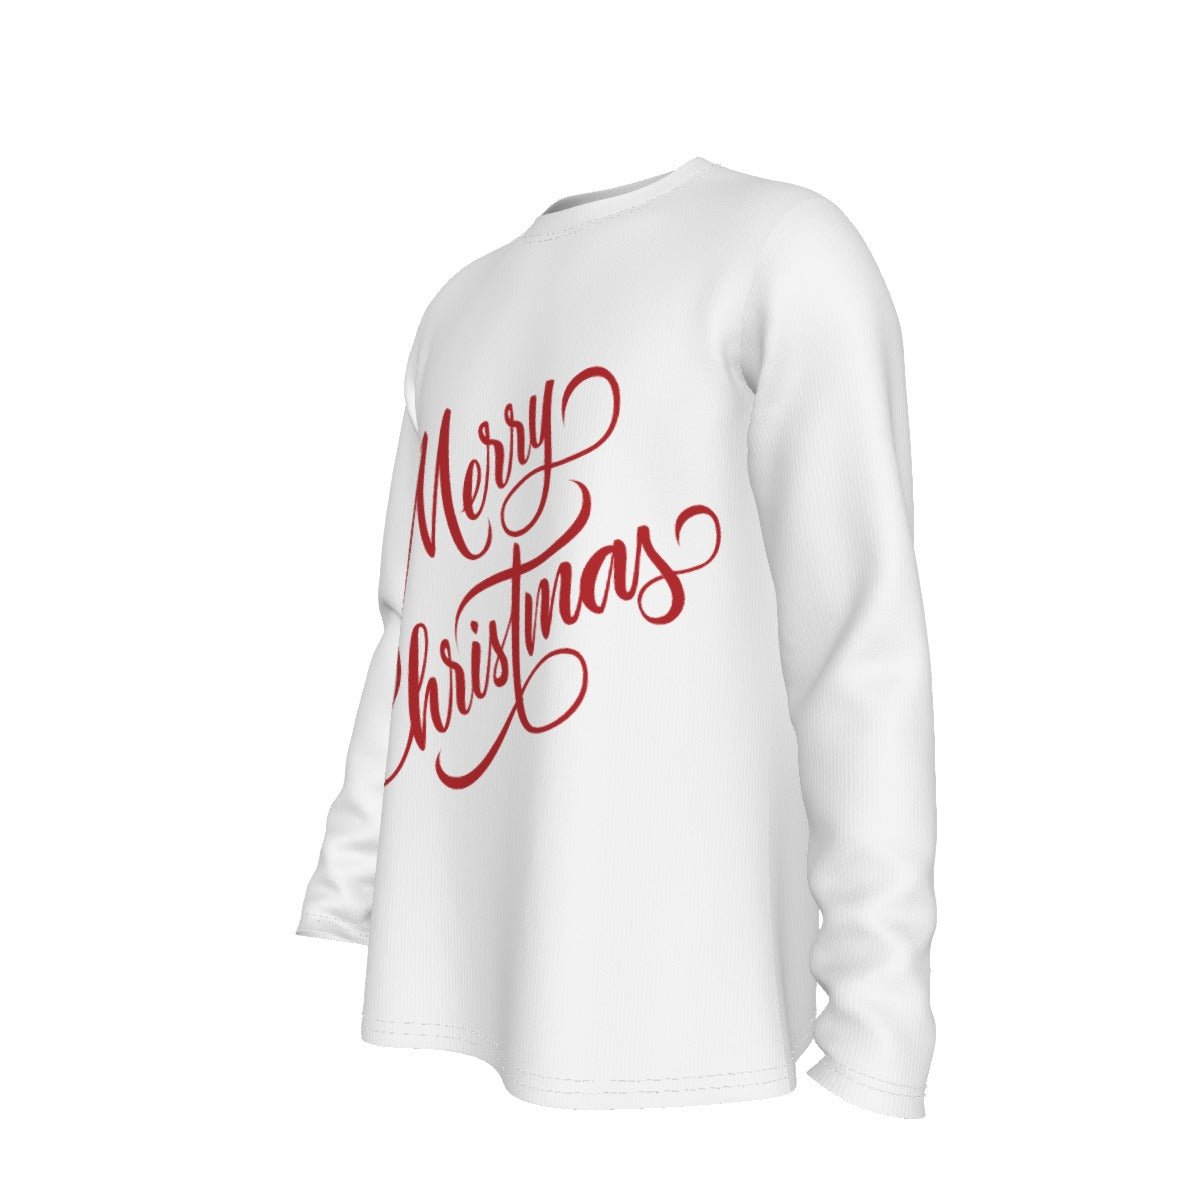 Men's Long Sleeve Christmas T-Shirt - Merry Christmas - White - Festive Style